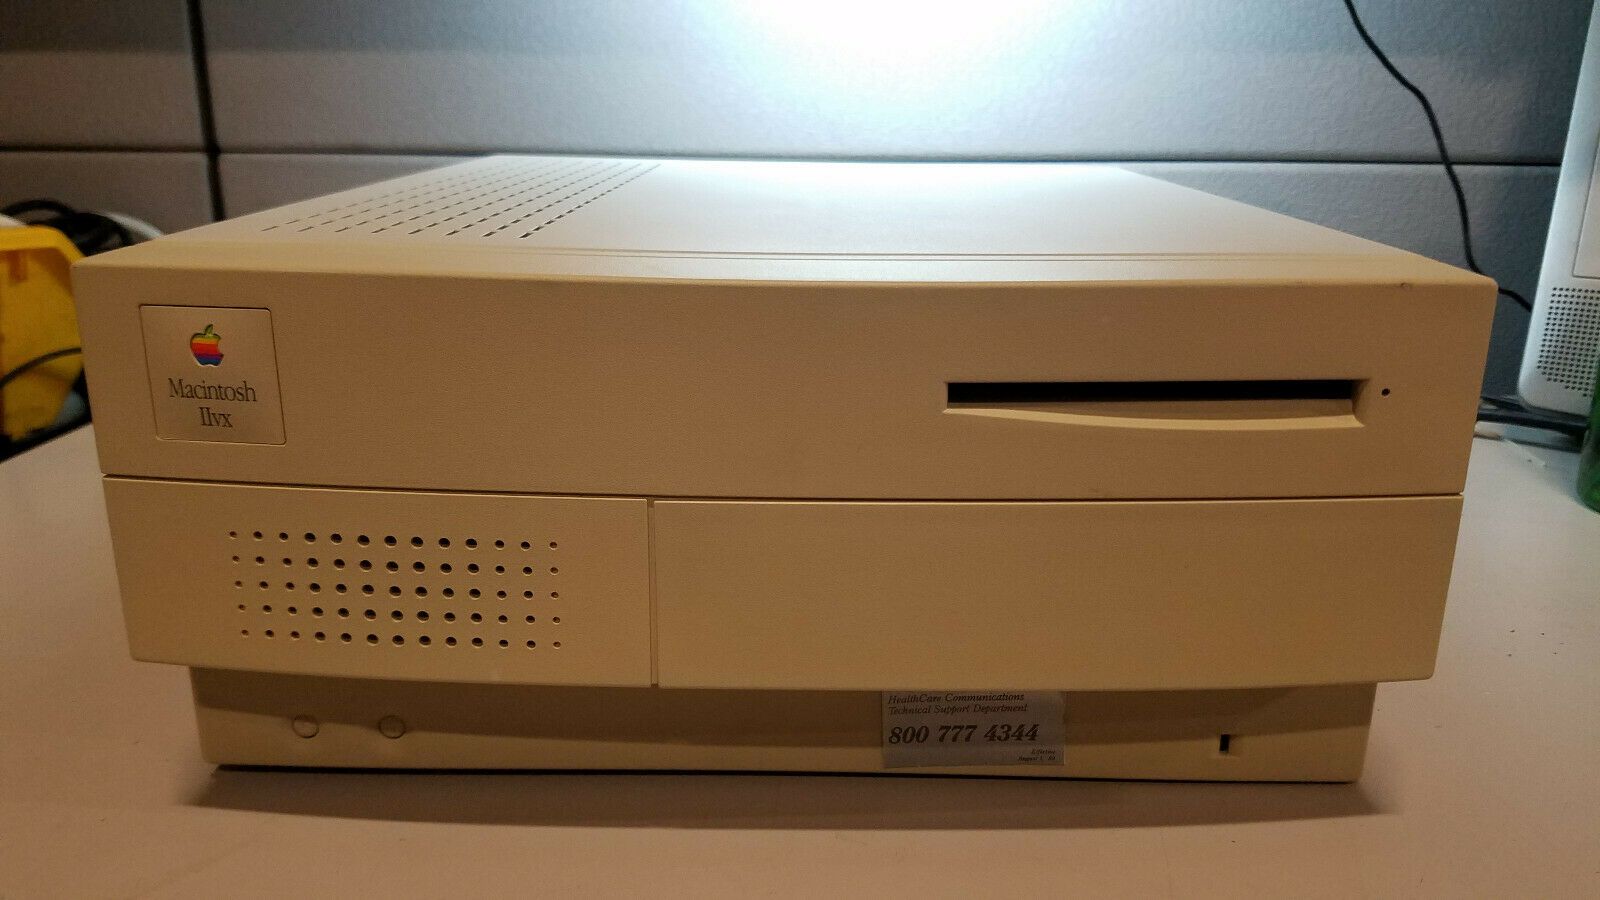 Этот день в истории Apple: компания выпускает первый Mac со встроенным CD-ROM